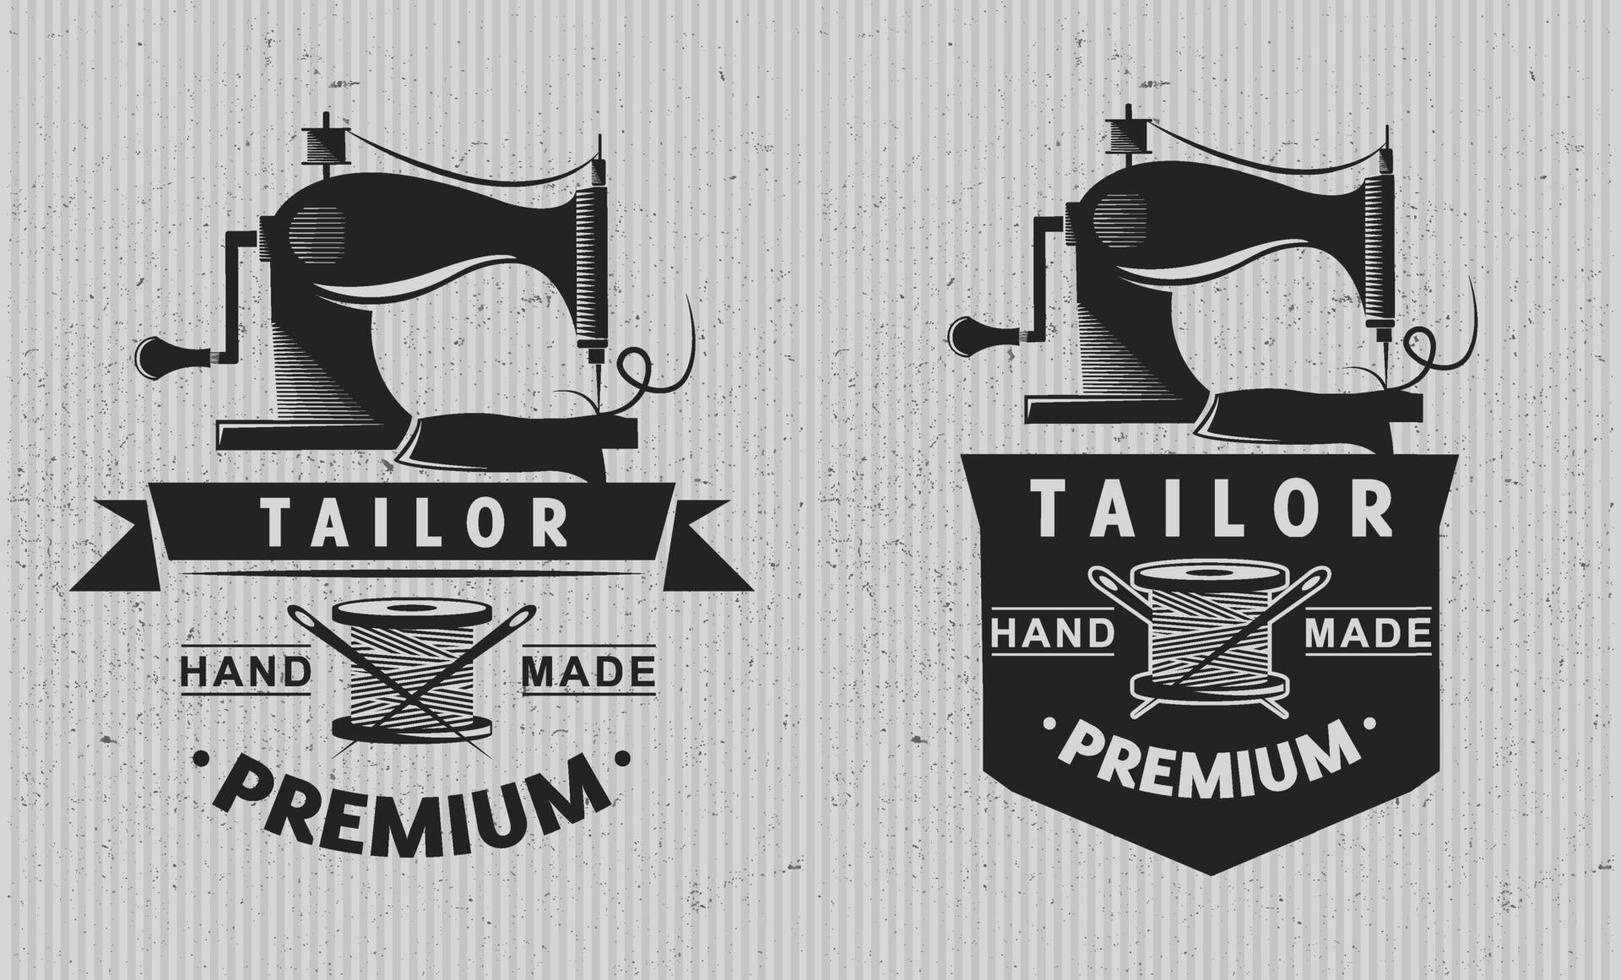 Tailor shop logo emblem. Tailoring concept. Knitting. Vector illustration design.